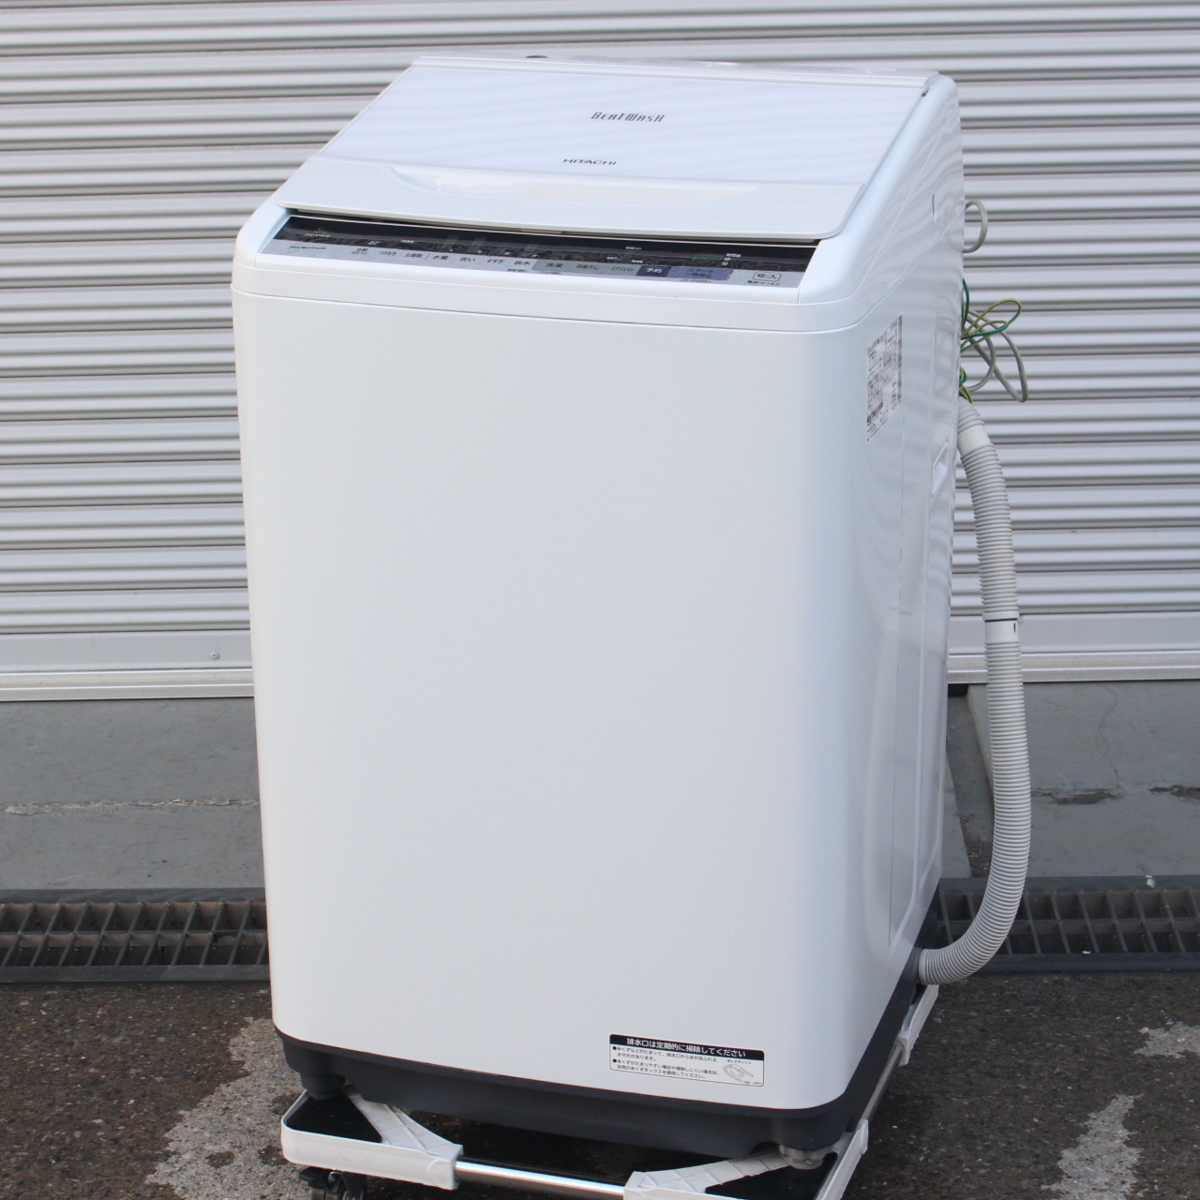 川崎市中原区にて 日立 全自動洗濯機 BW-V80B 2017年製 を出張買取させて頂きました。